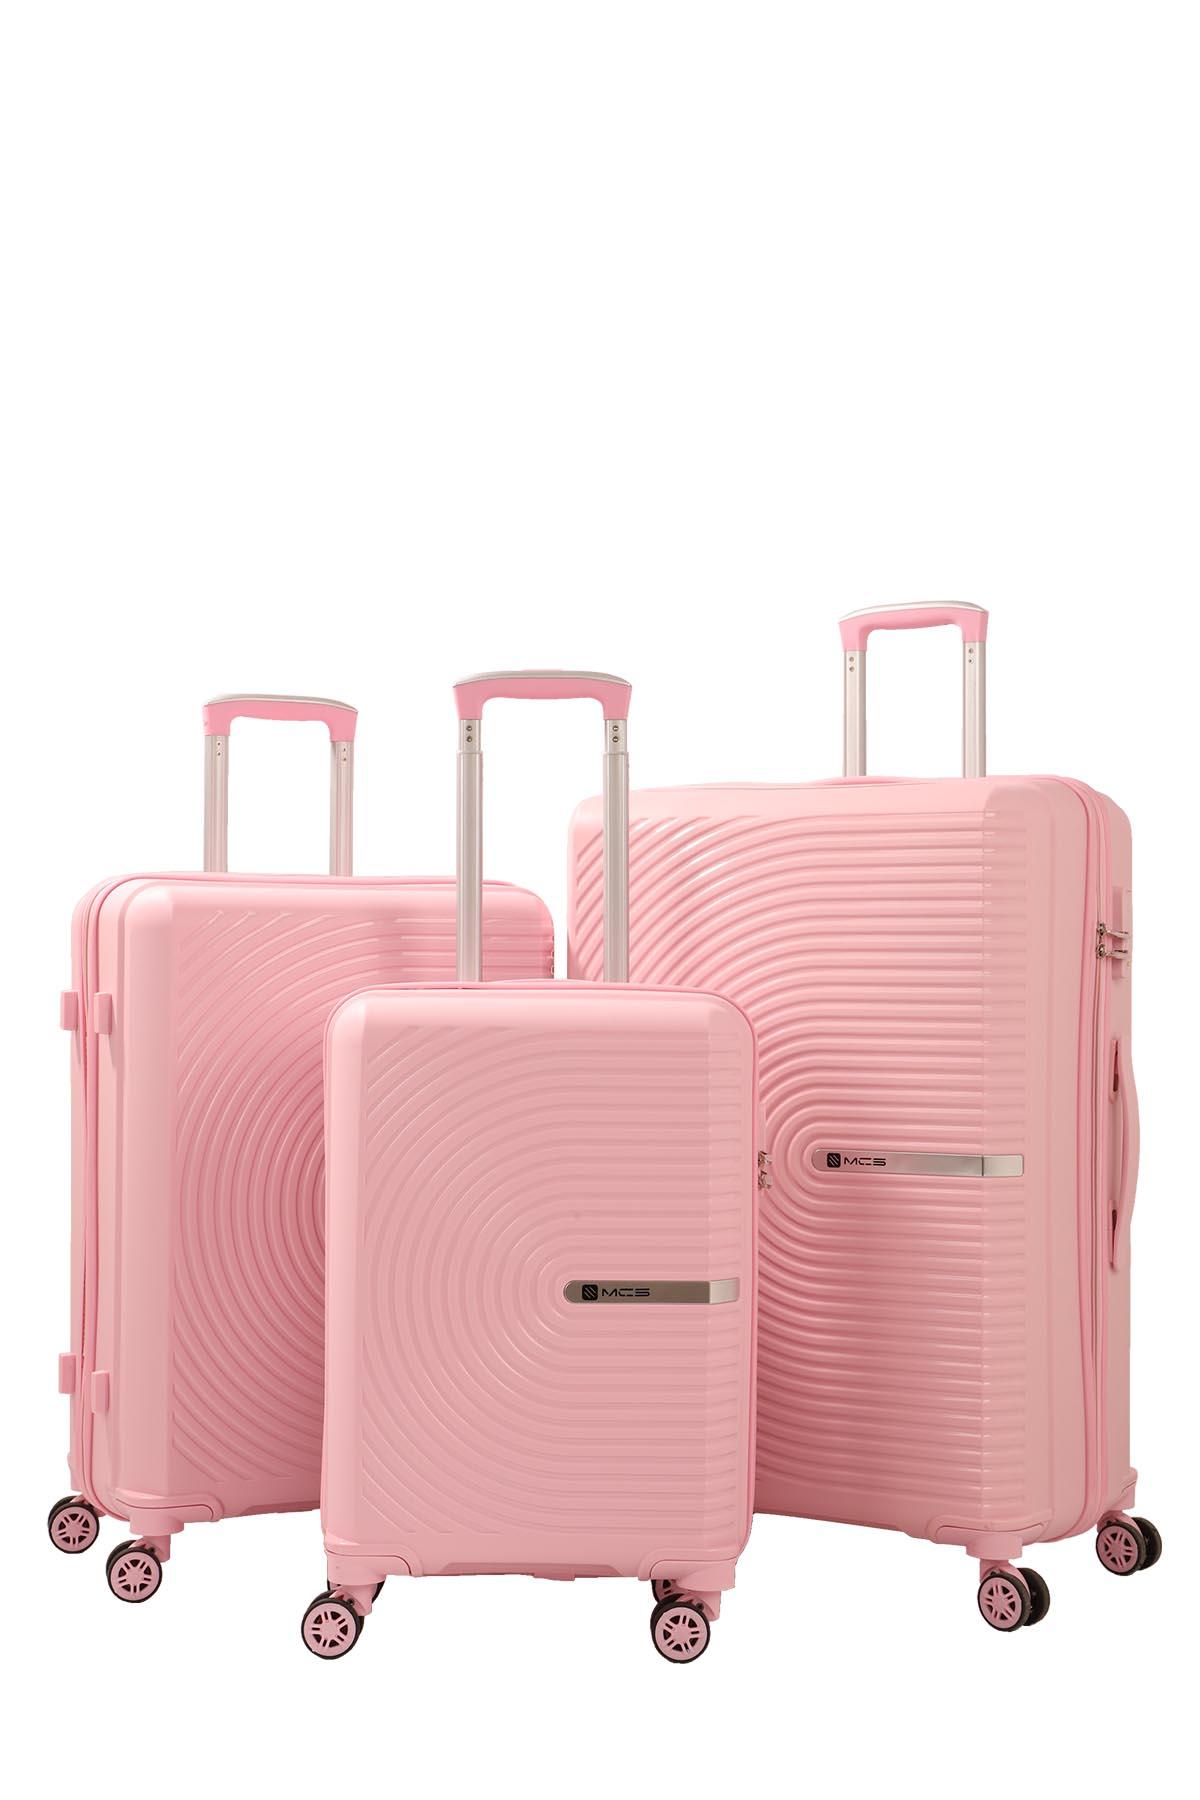 Slike MCS Kofer V374 roze S 55cm